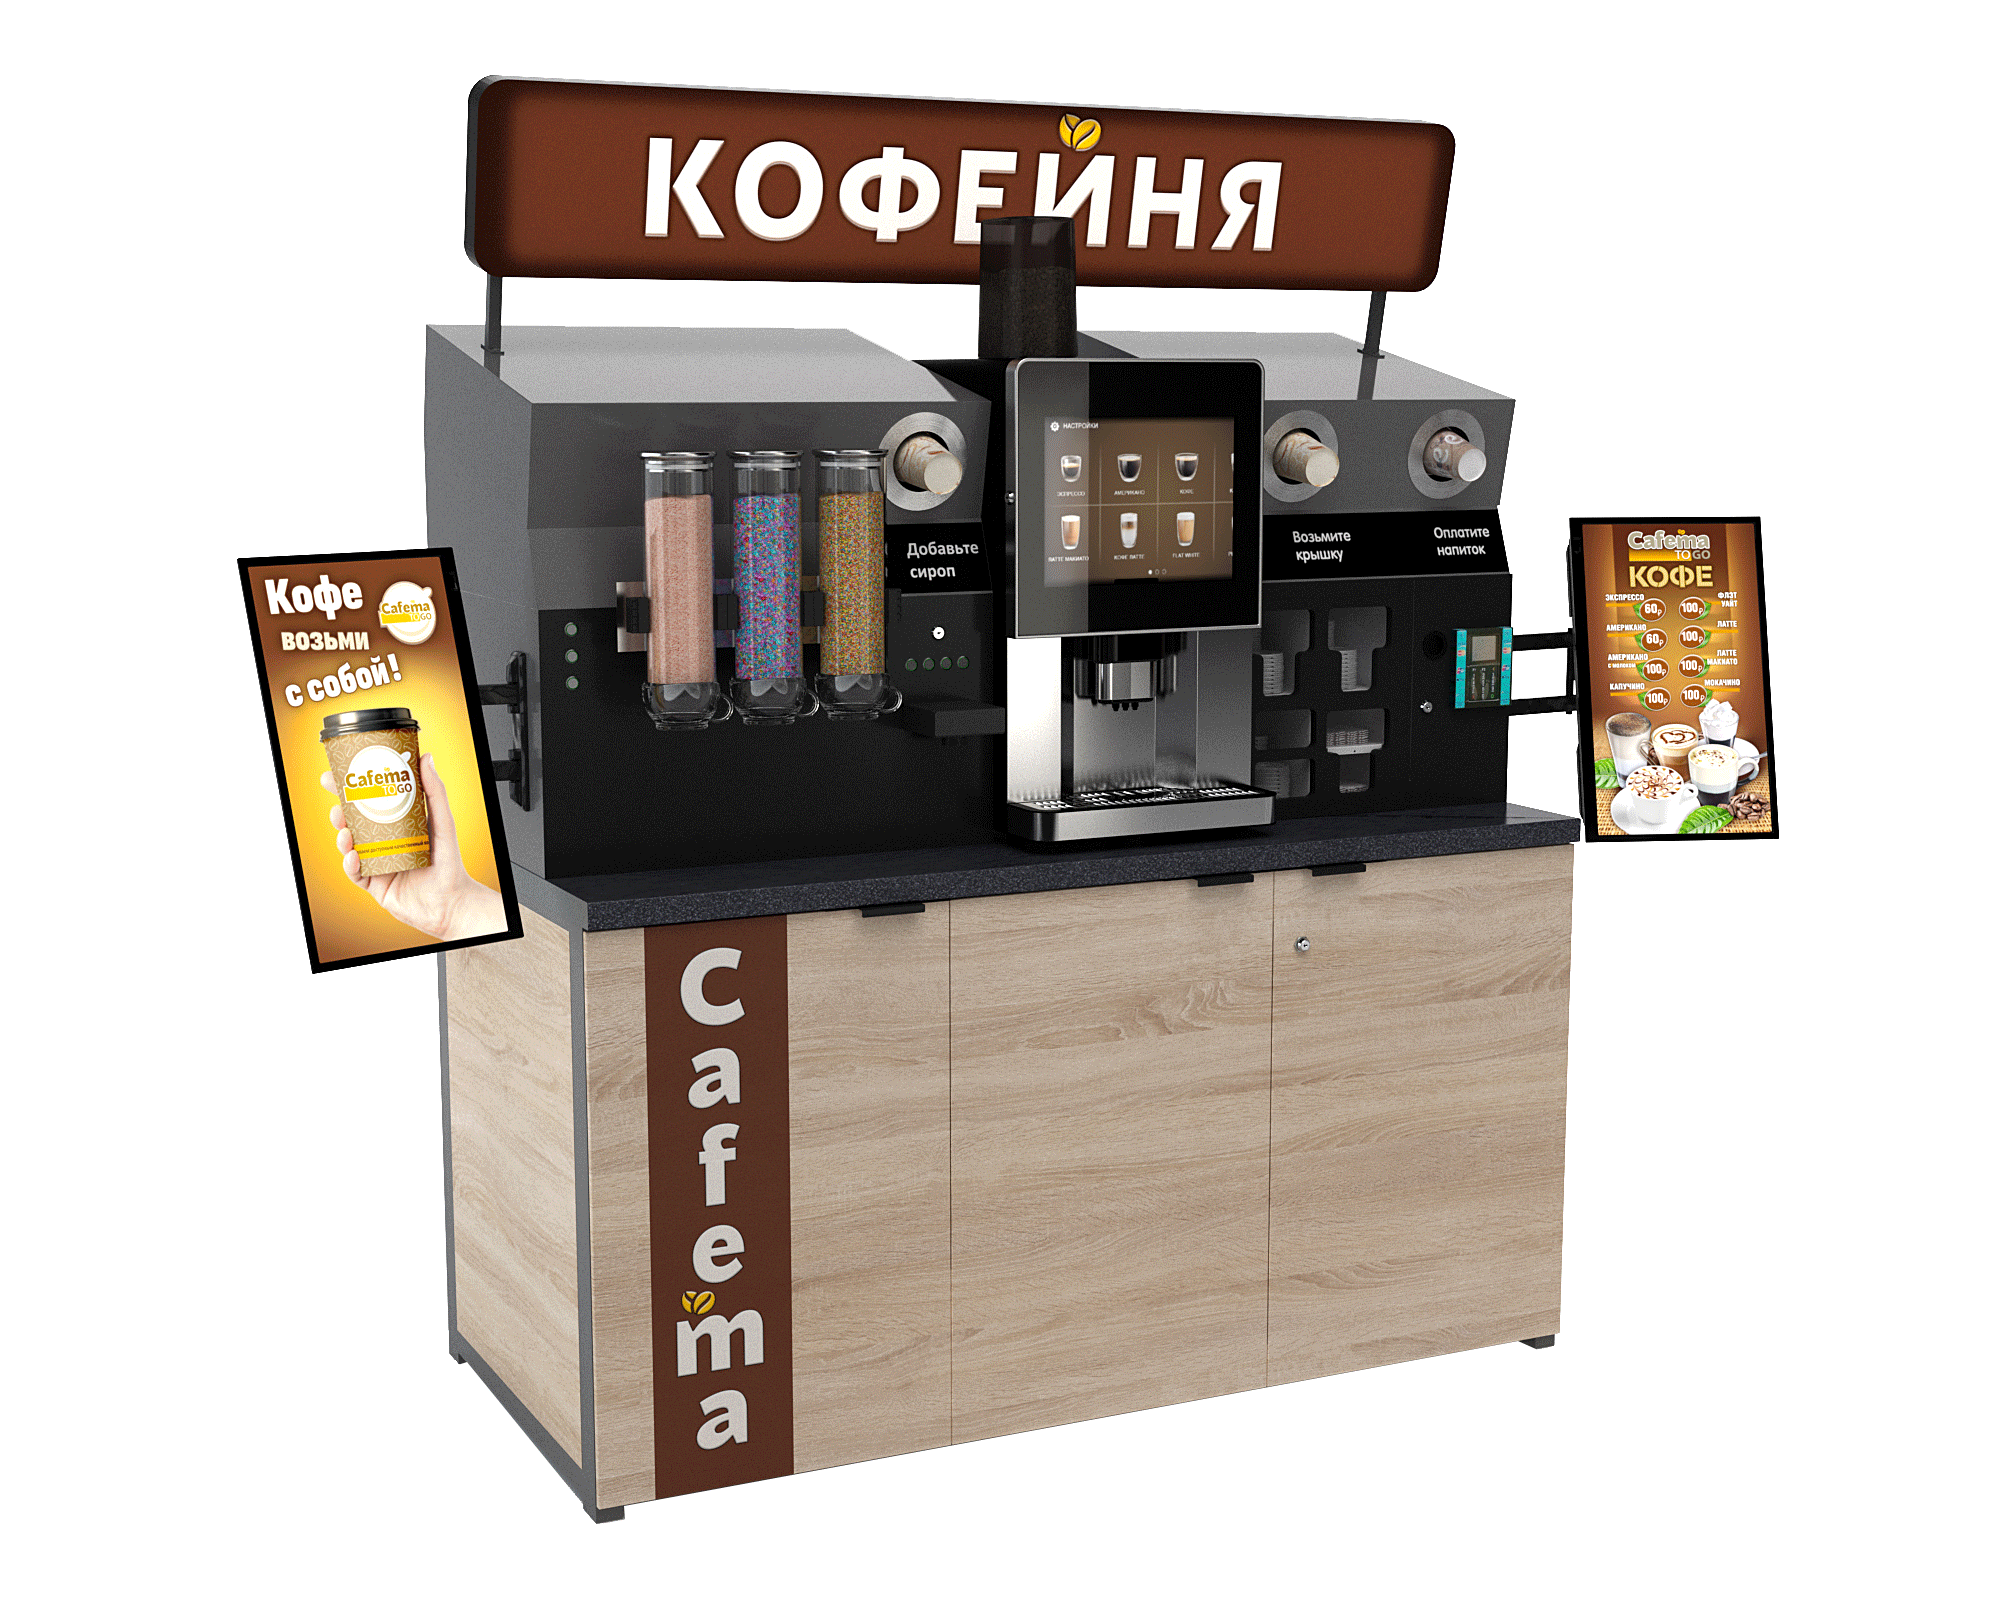 Франшиза кофейни в казахстане. Proxima m12 кофемашина. BLUETEC кофемашина для кофейни самообслуживания. Lifehacker кофейня самообслуживания. Вендинг кофейня самообслуживания.